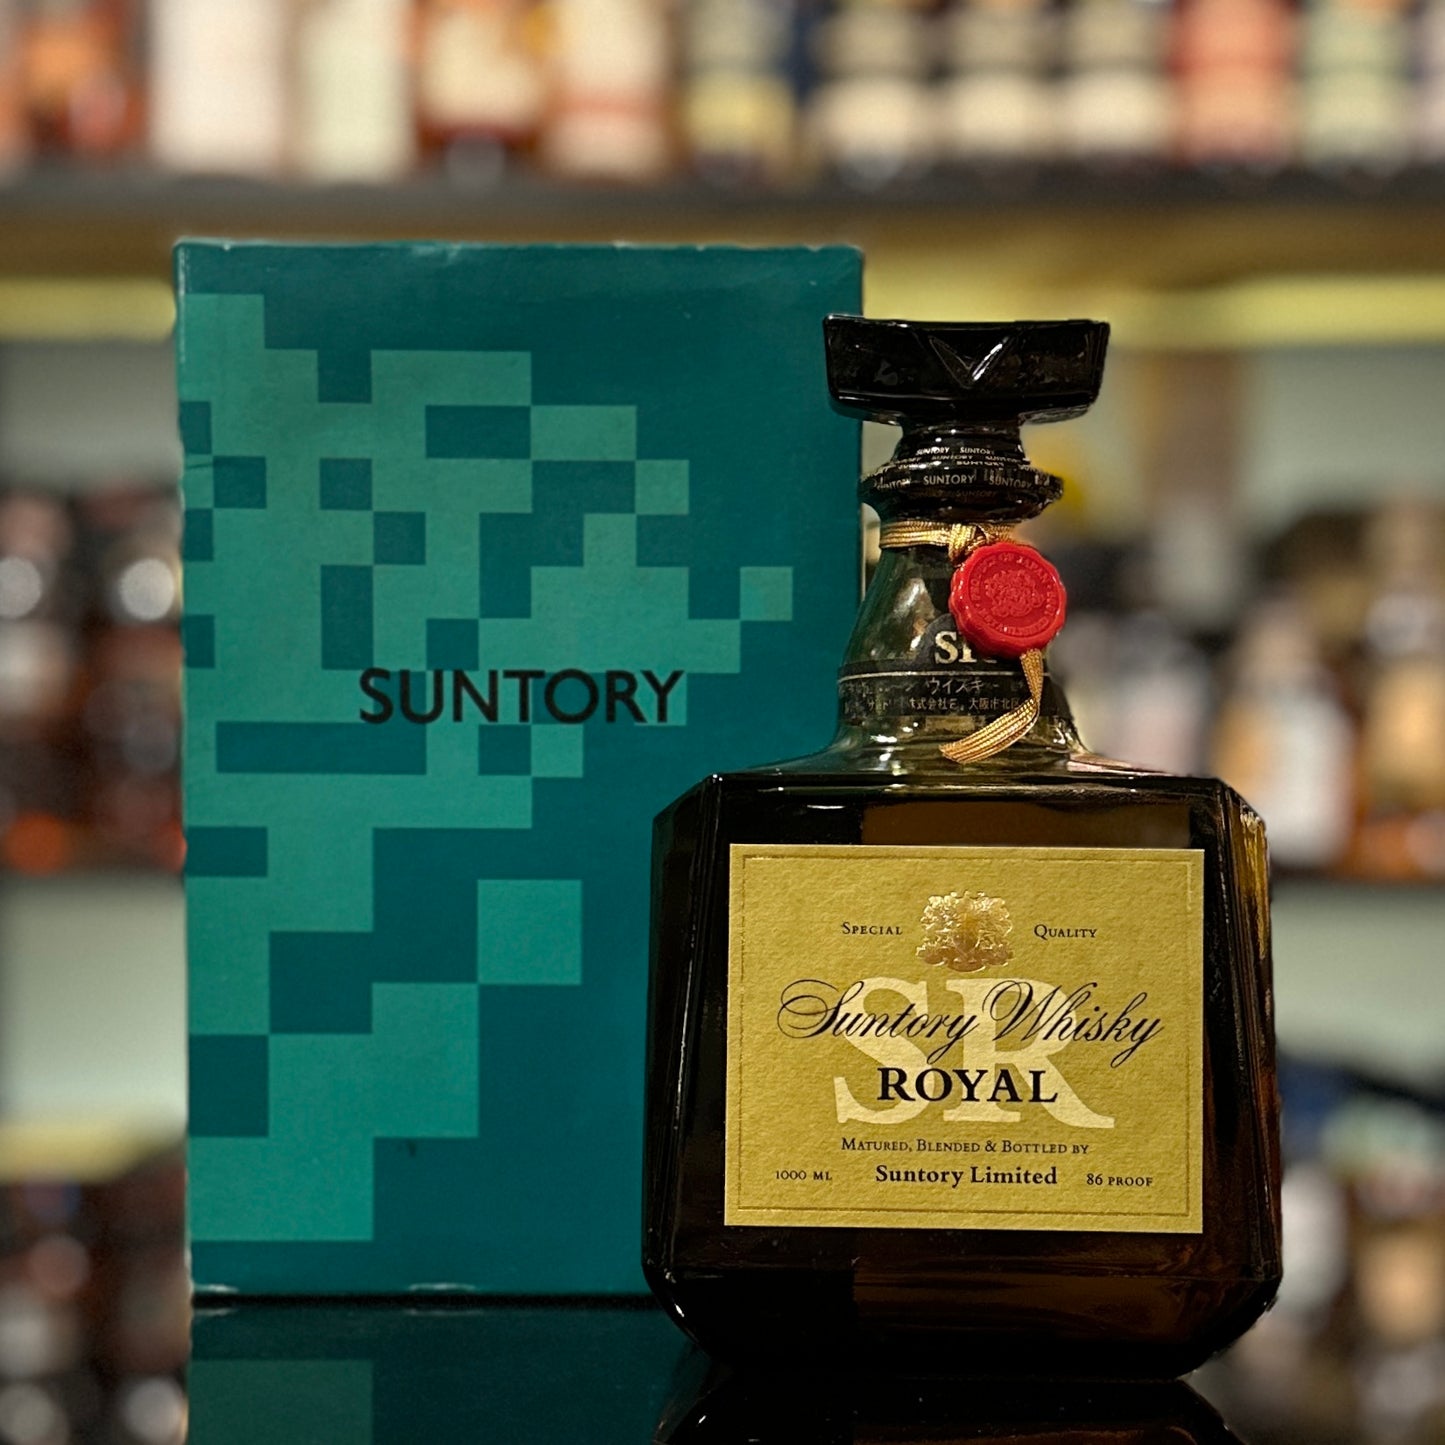 Suntory Royal Blended Japanese Whisky (Green Box, 1000ml)